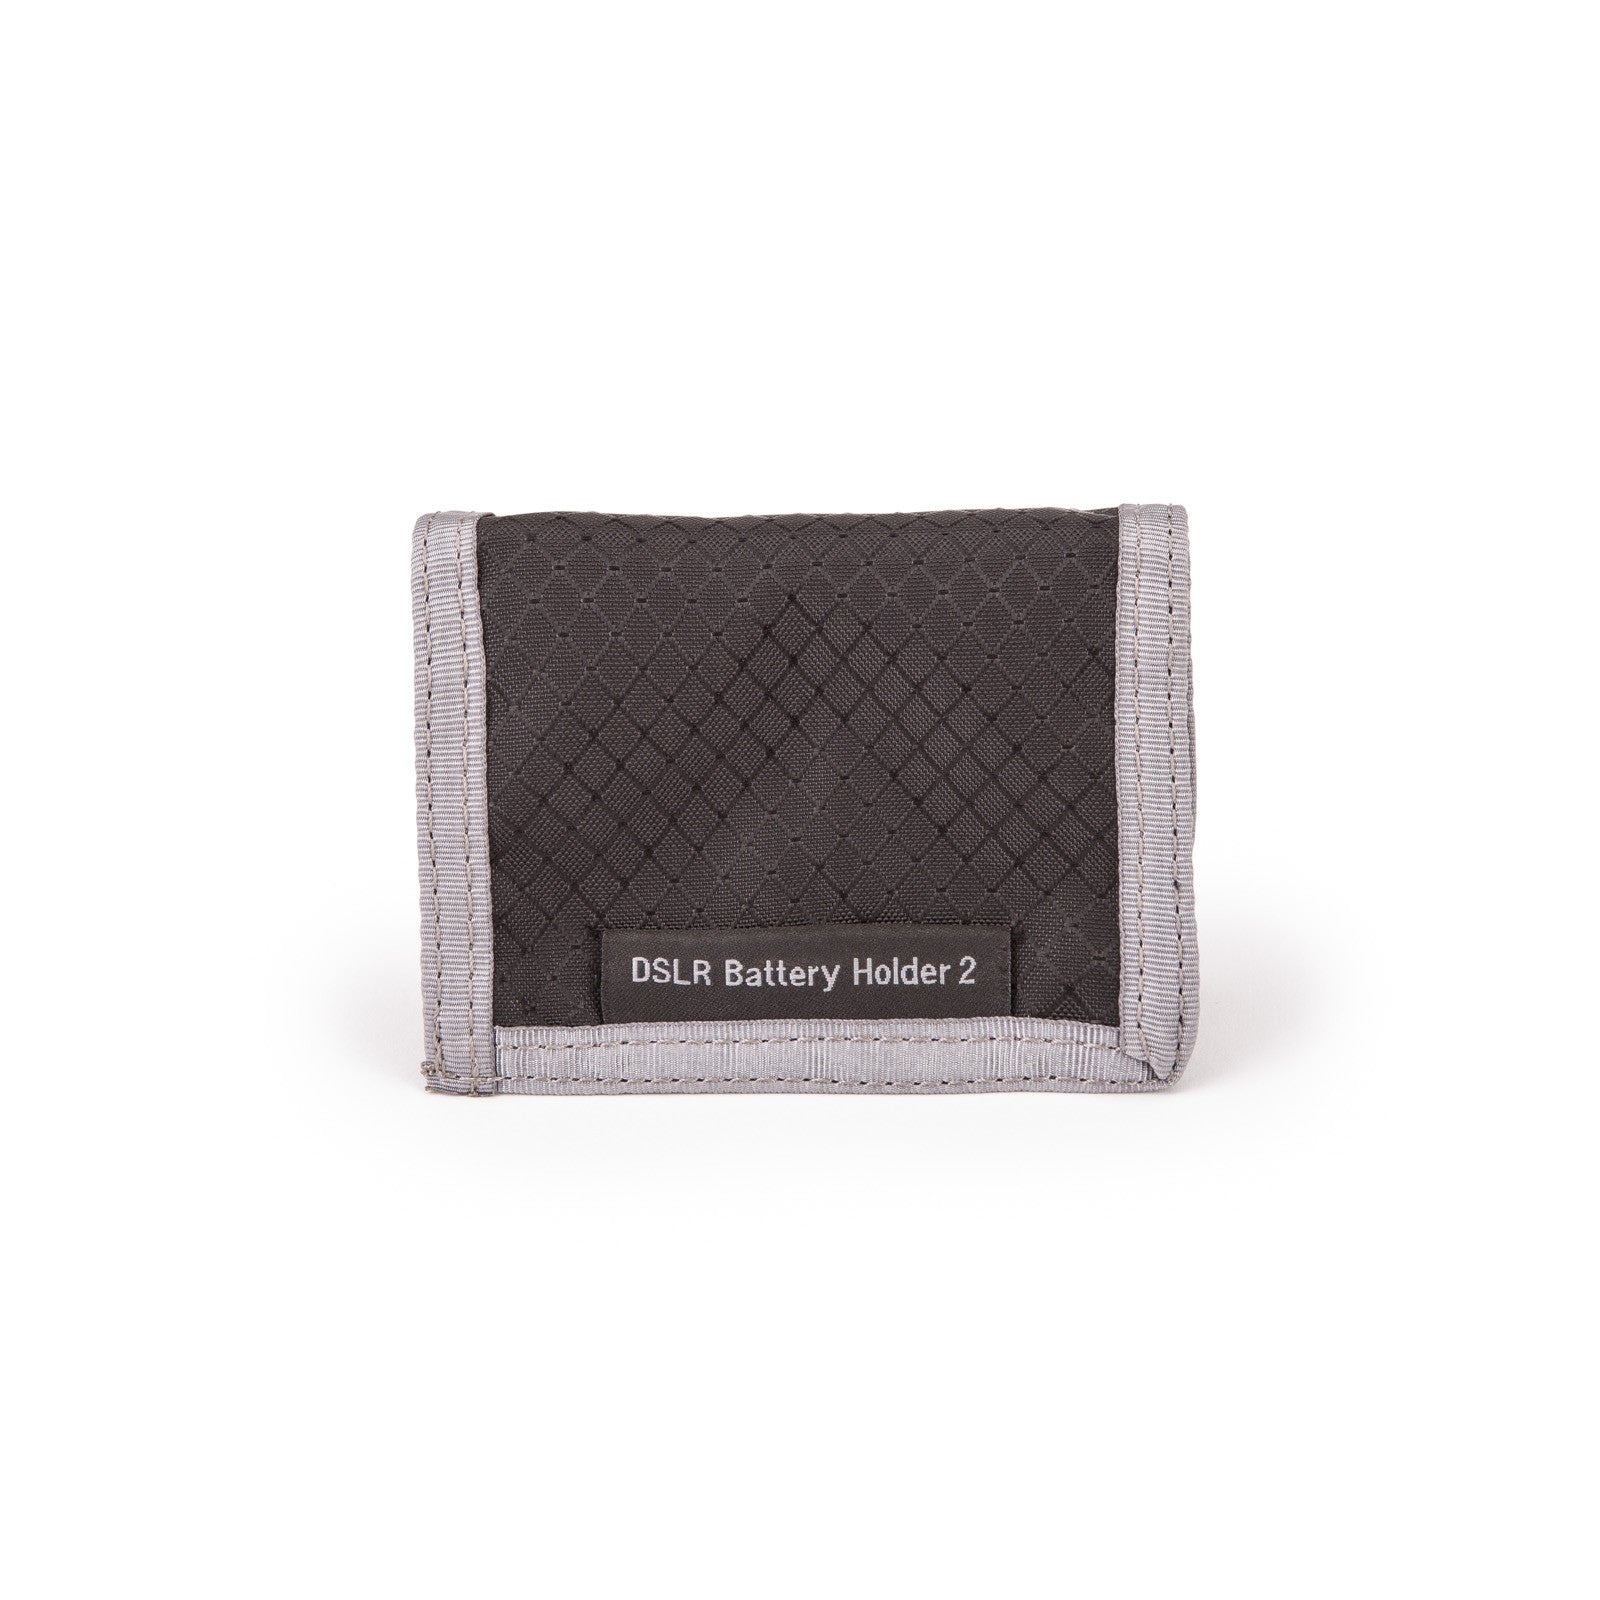 DSLR Battery Holder 2